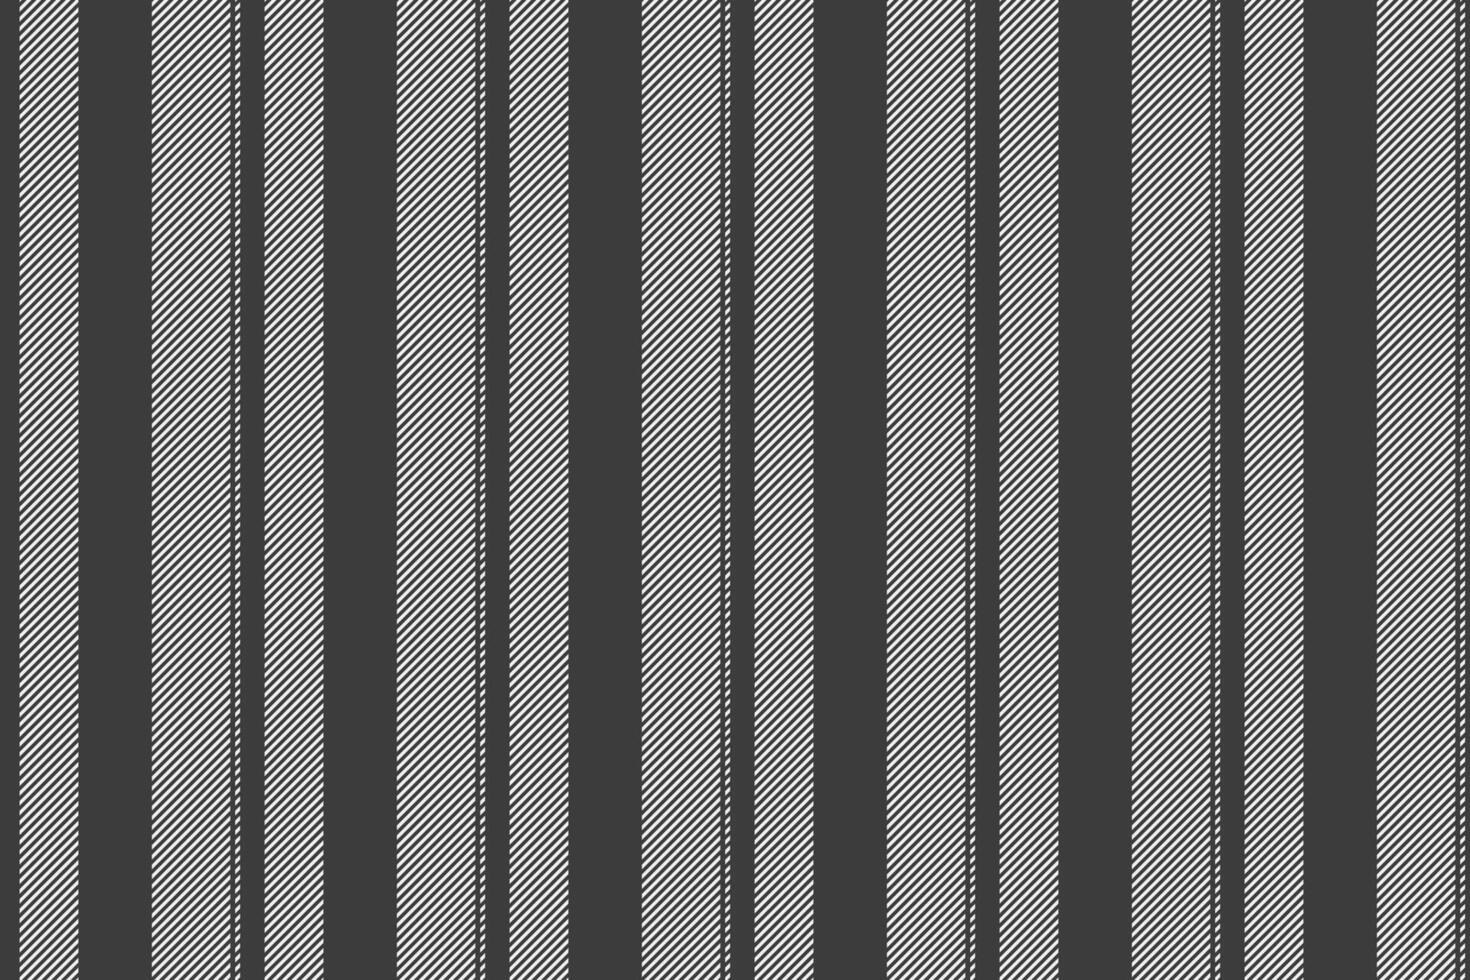 Textil- Hintergrund Linien von Textur Stoff Vektor mit ein Streifen Muster nahtlos Vertikale.